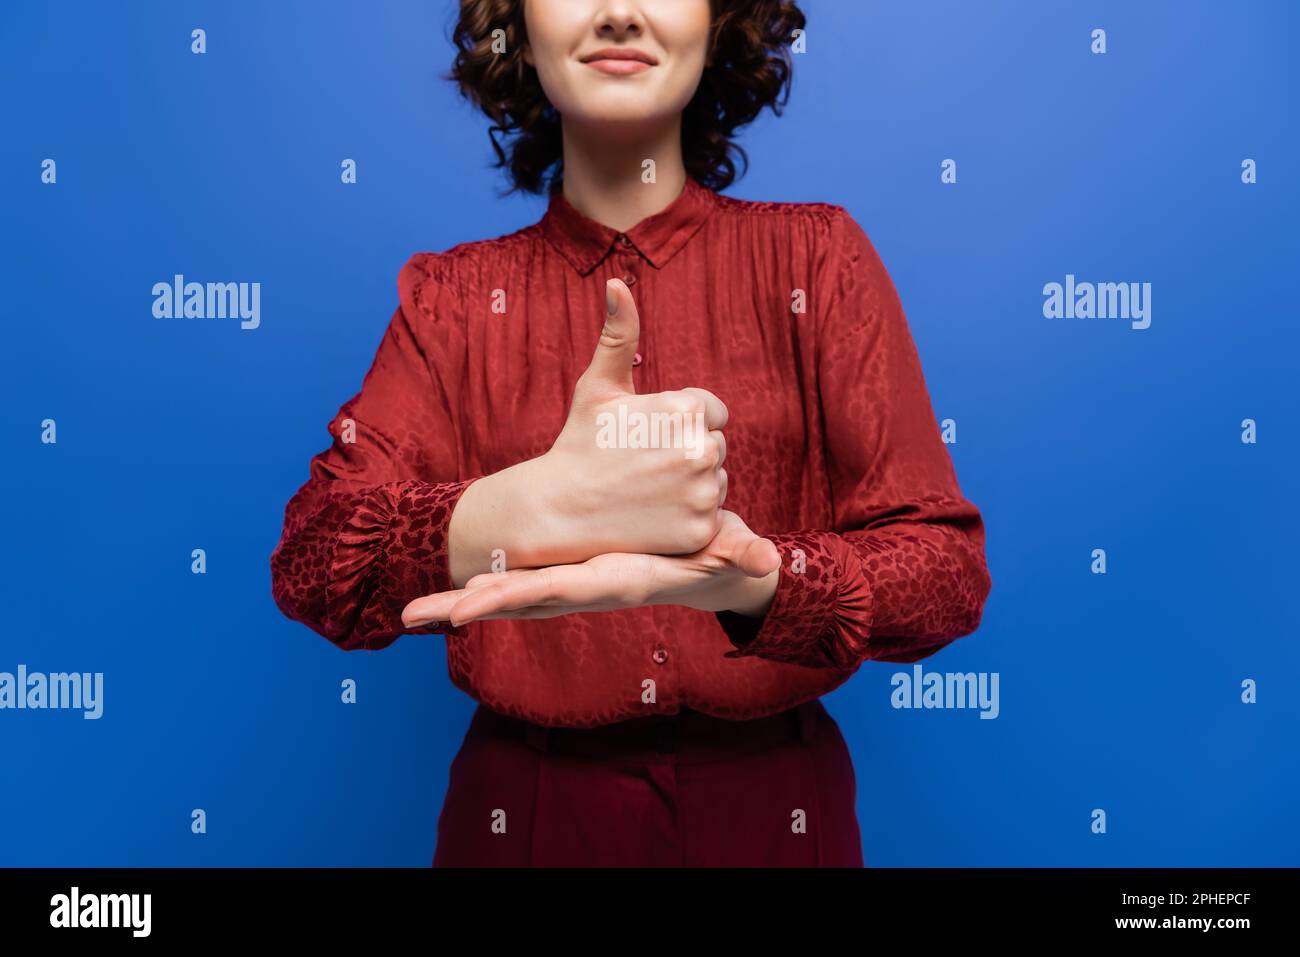 vista parziale della donna positiva in borgogna blusa mostrando gesto che significa aiuto sul linguaggio dei segni isolato su blu, immagine stock Foto Stock